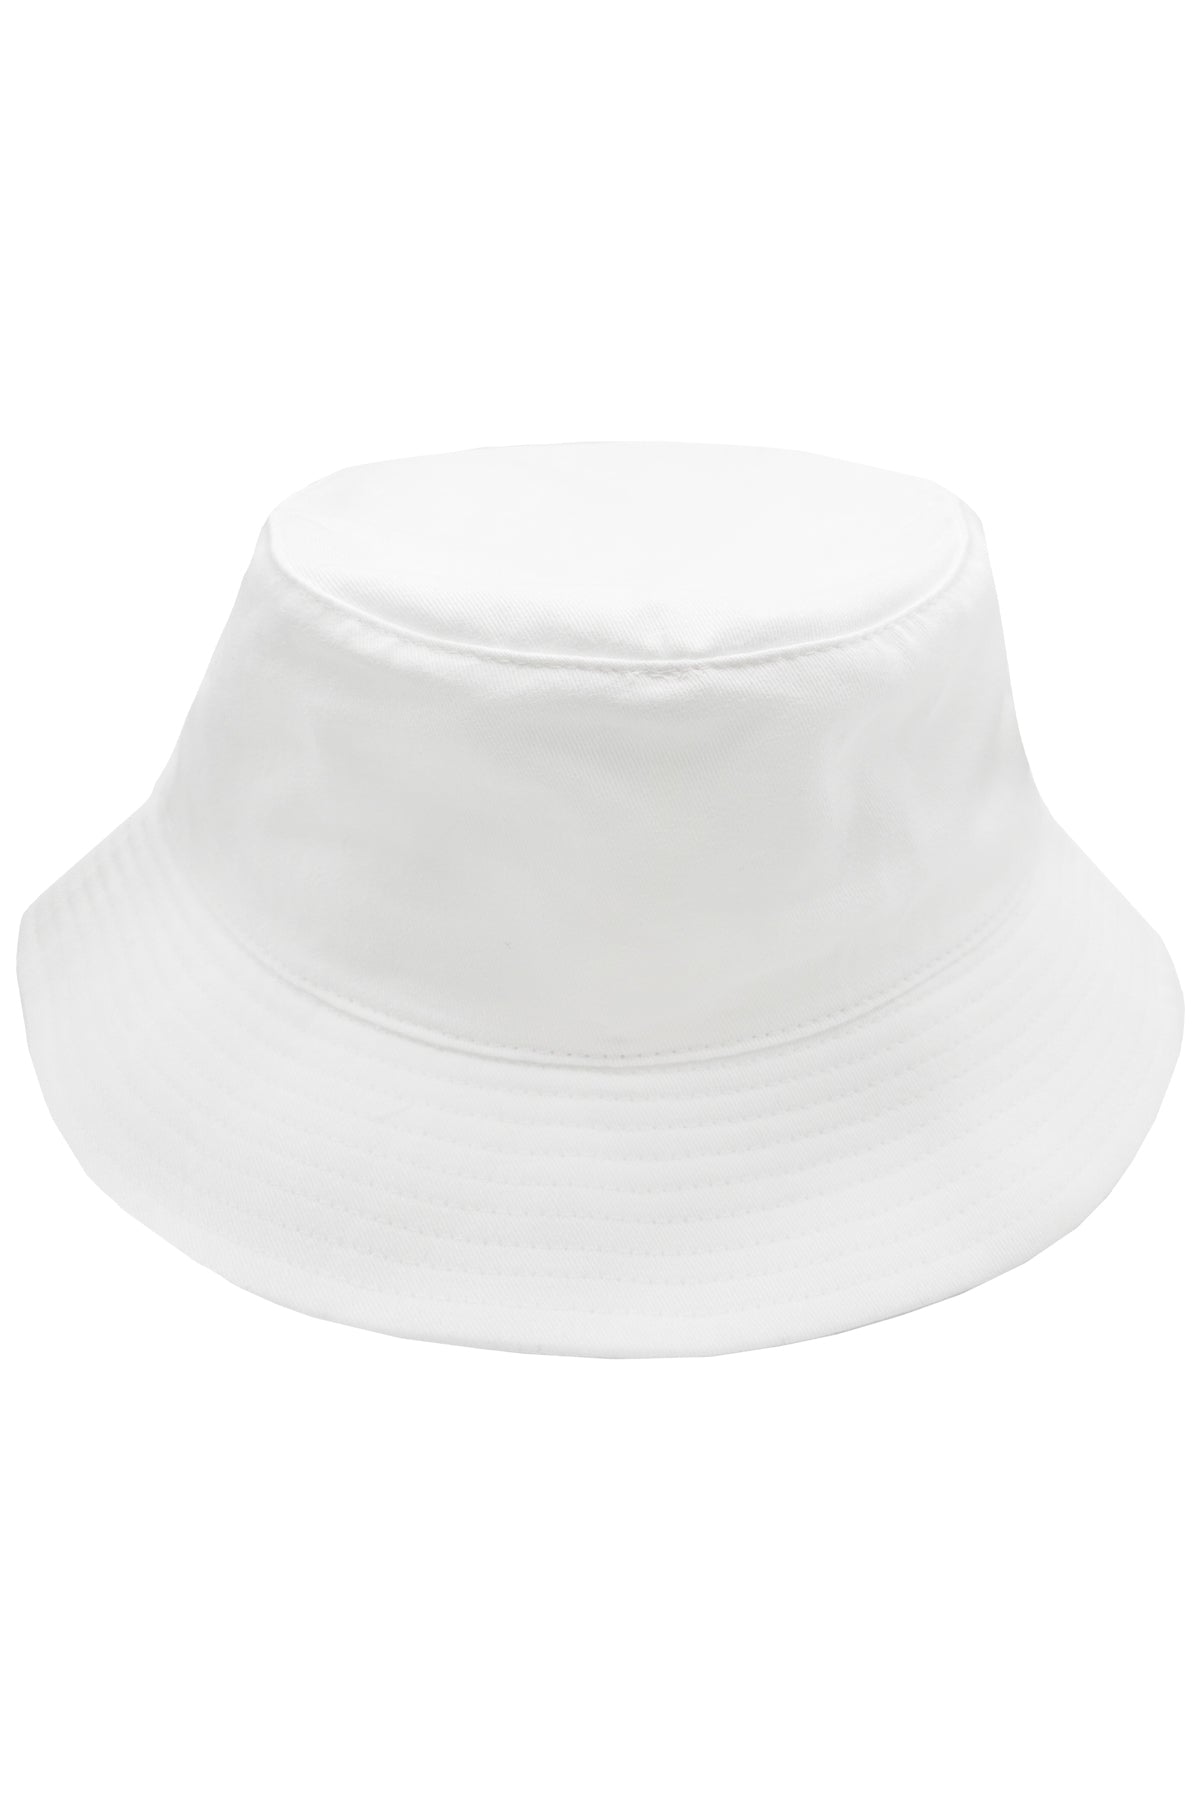 LULI BABE - Luli Babe Bucket Hat • White – Luli Fama